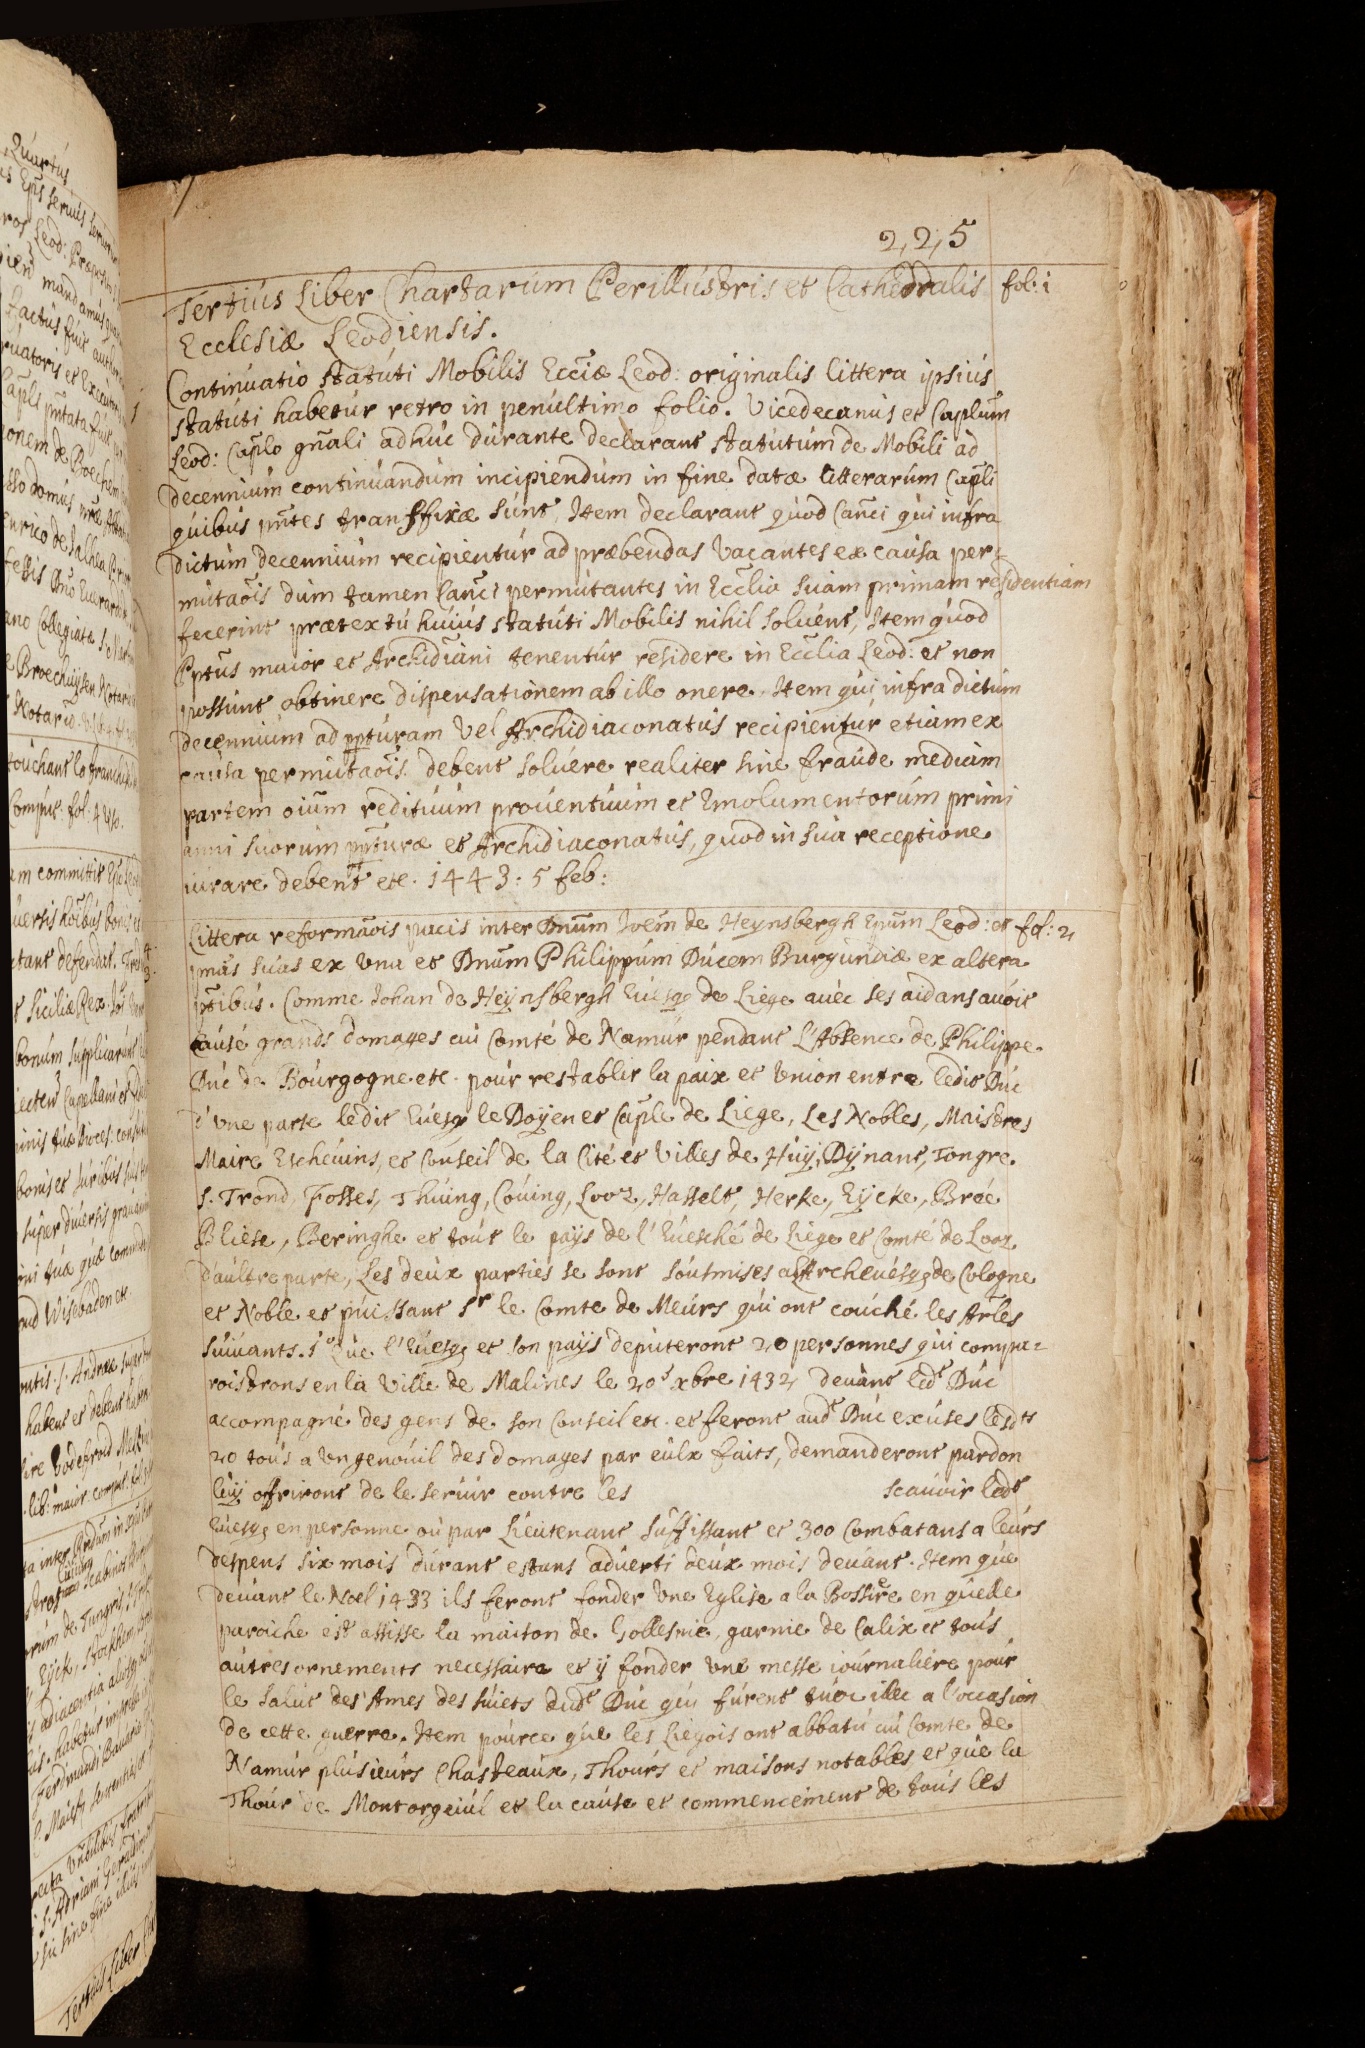 Extractum ex libro primo chartatum ecclesiae Leodiensis conscripto de mandato capituli